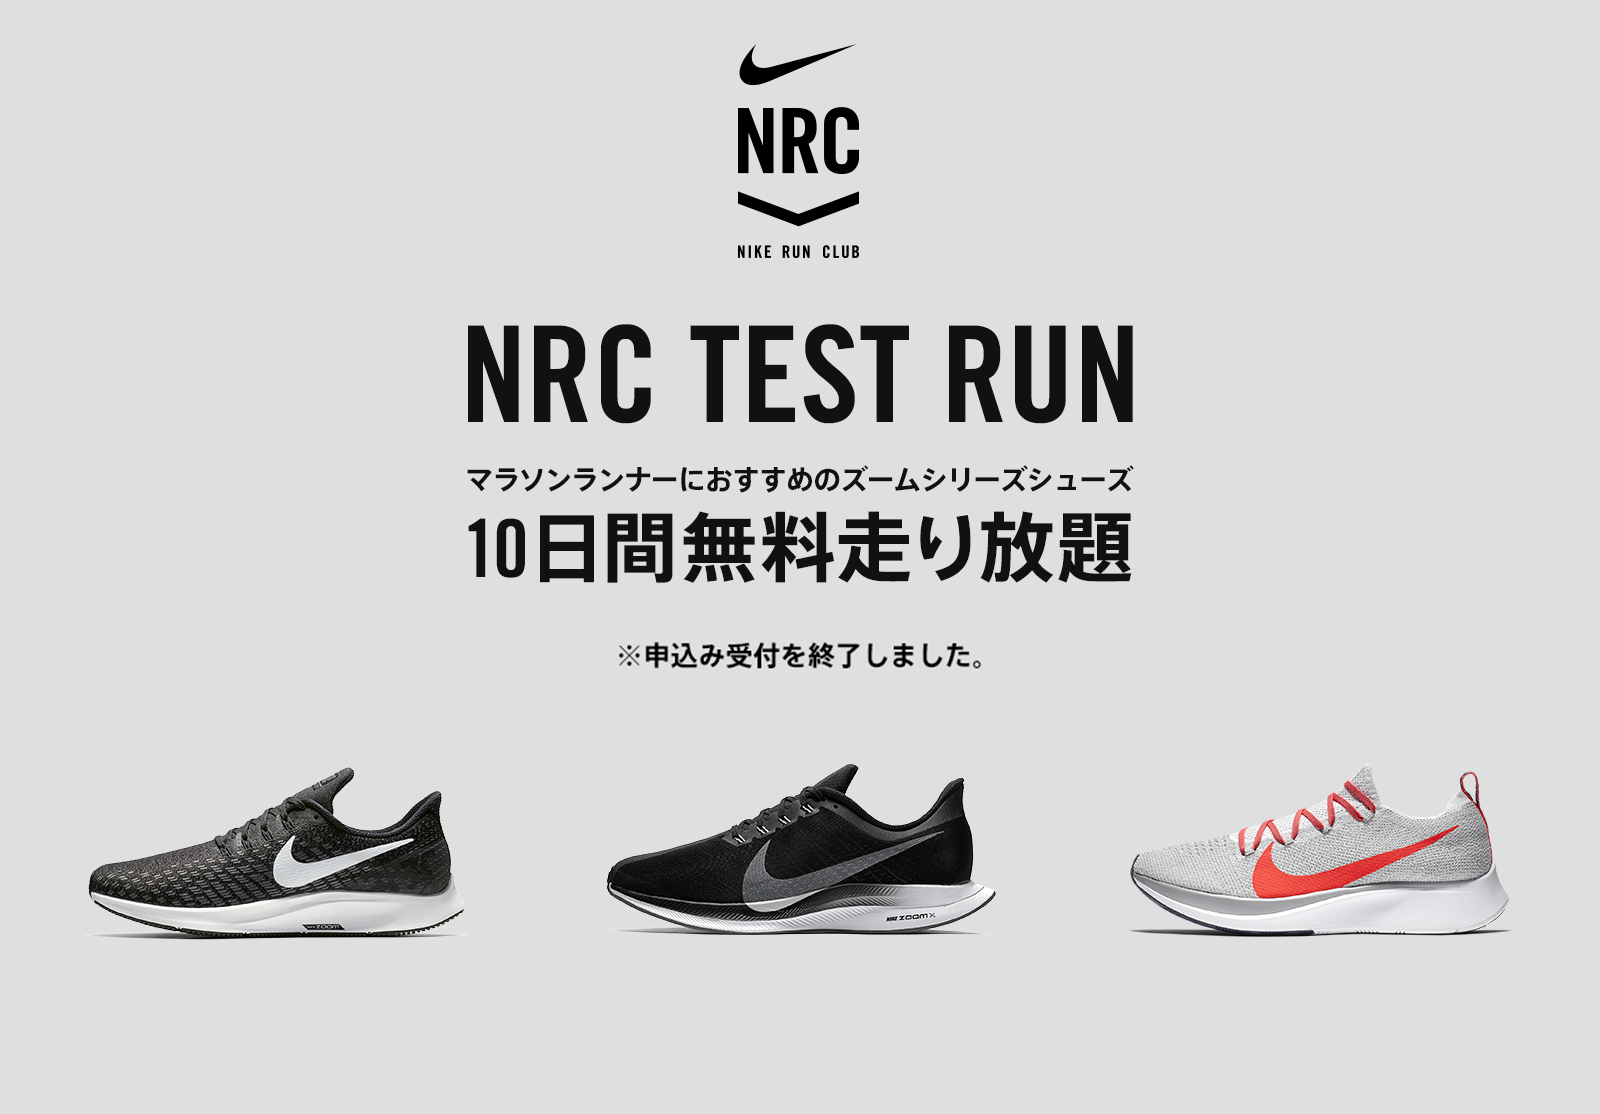 NRC TEST RUN マラソンランナーにおすすめの3モデルを10日間無料で走り放題